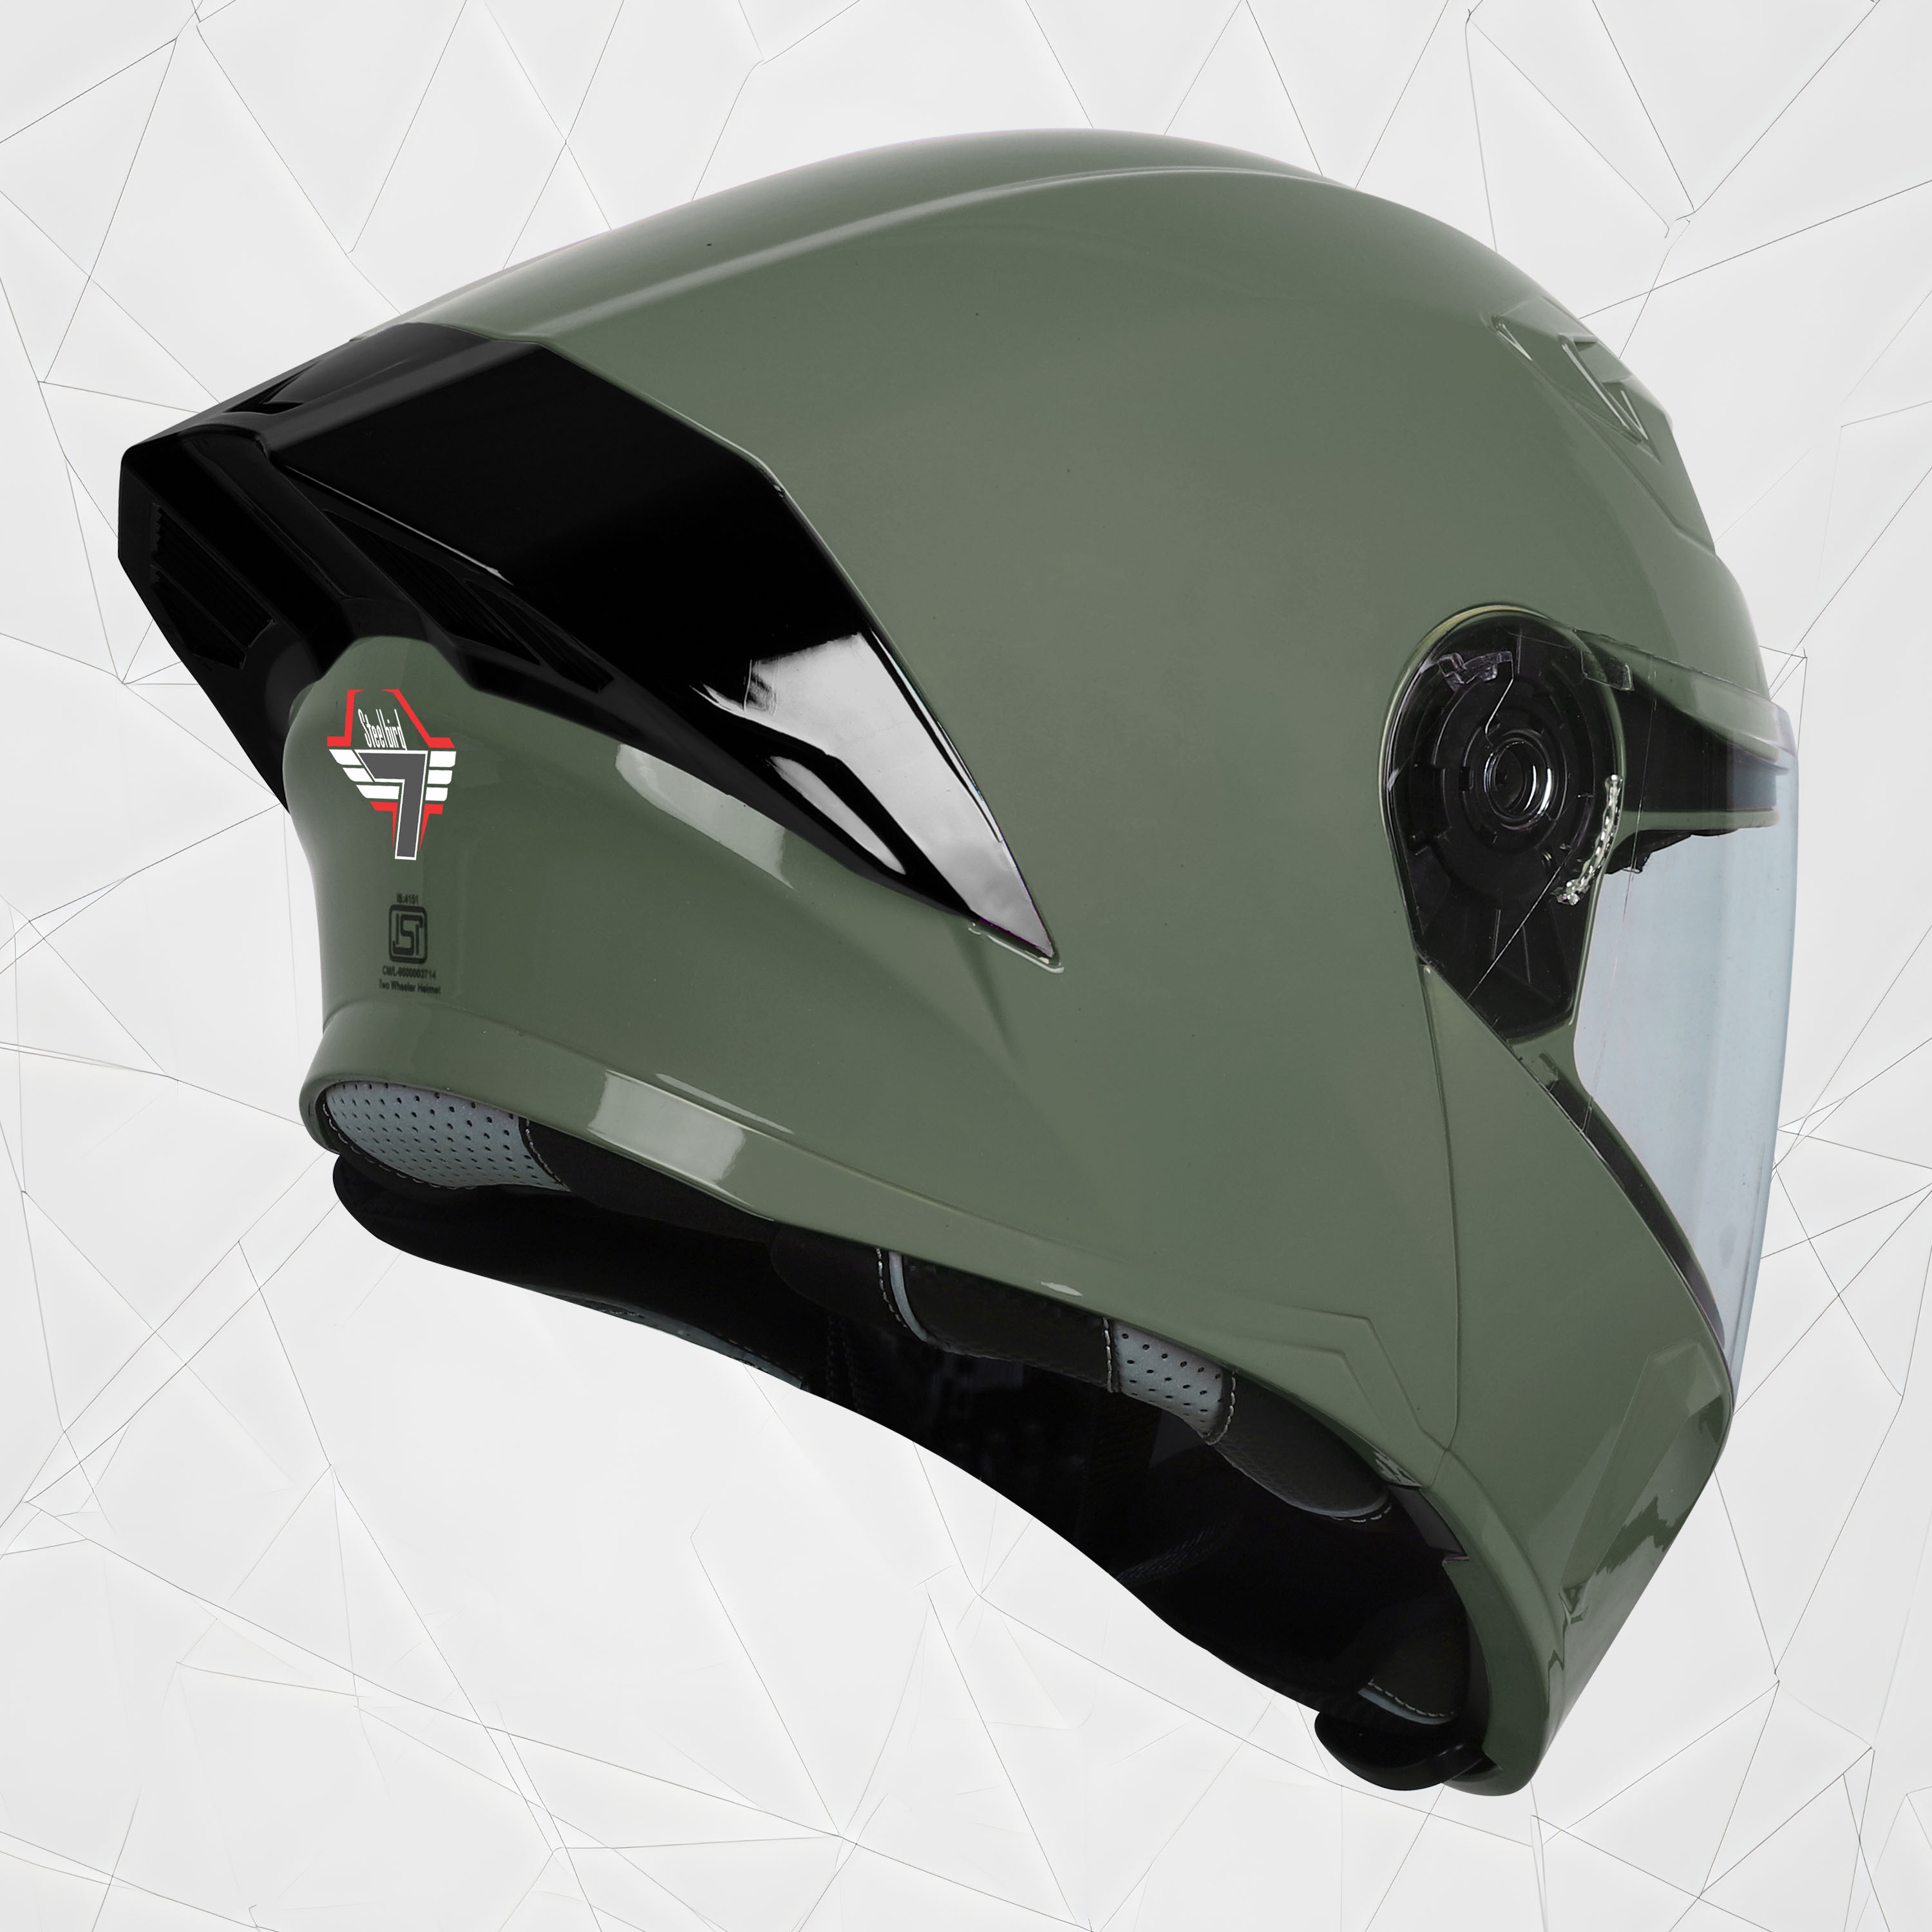 Steelbird SBA-20 7Wings ISI Certified Flip-Up Helmet With Black Spoiler For Men And Women (Matt Battle Green With Clear Visor)